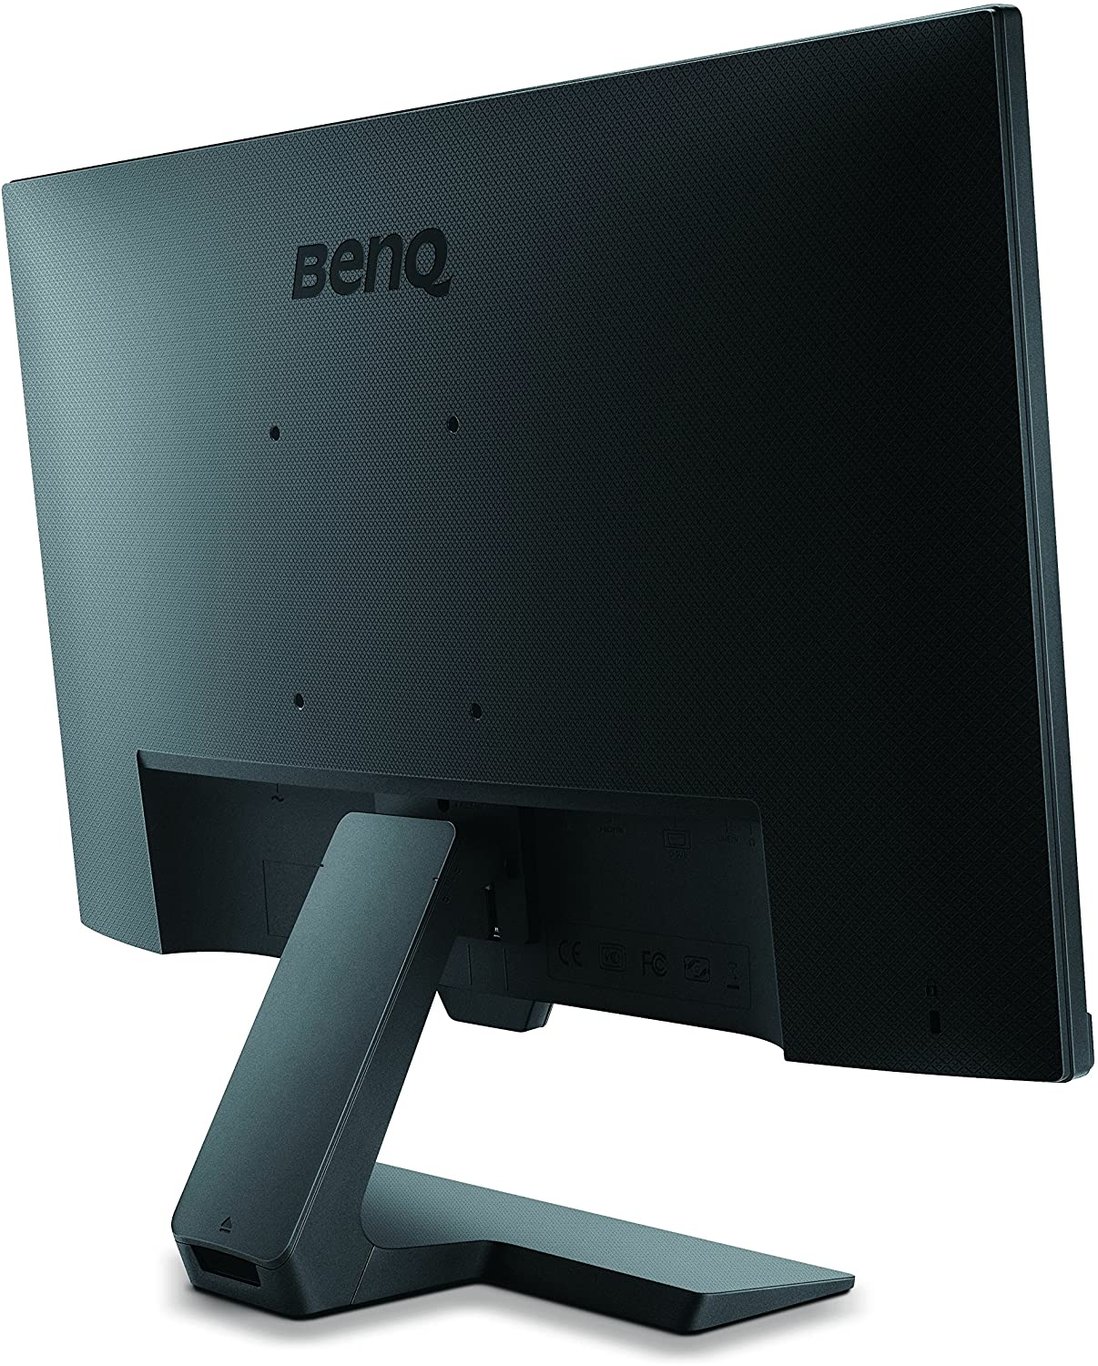 BenQ GW2480 光智慧護眼顯示器